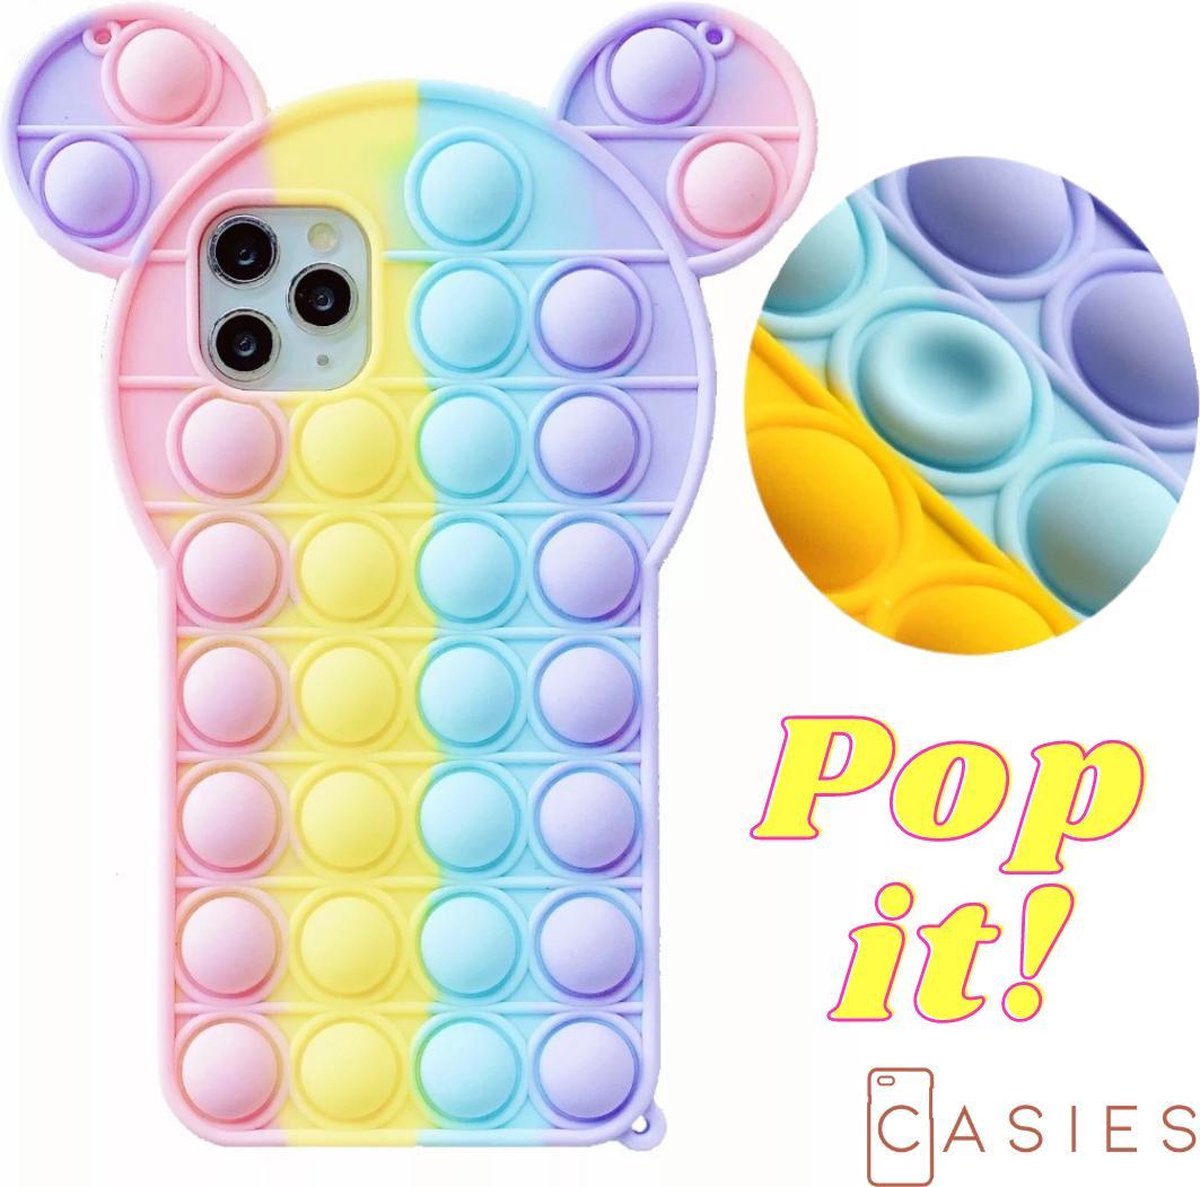 Casies Bunny Pop It telefoonhoesje - Apple iPhone 11 - Fidget Toy - Rainbow case konijn - Gezien op TikTok - Soft case hoesje - Fidget Toys